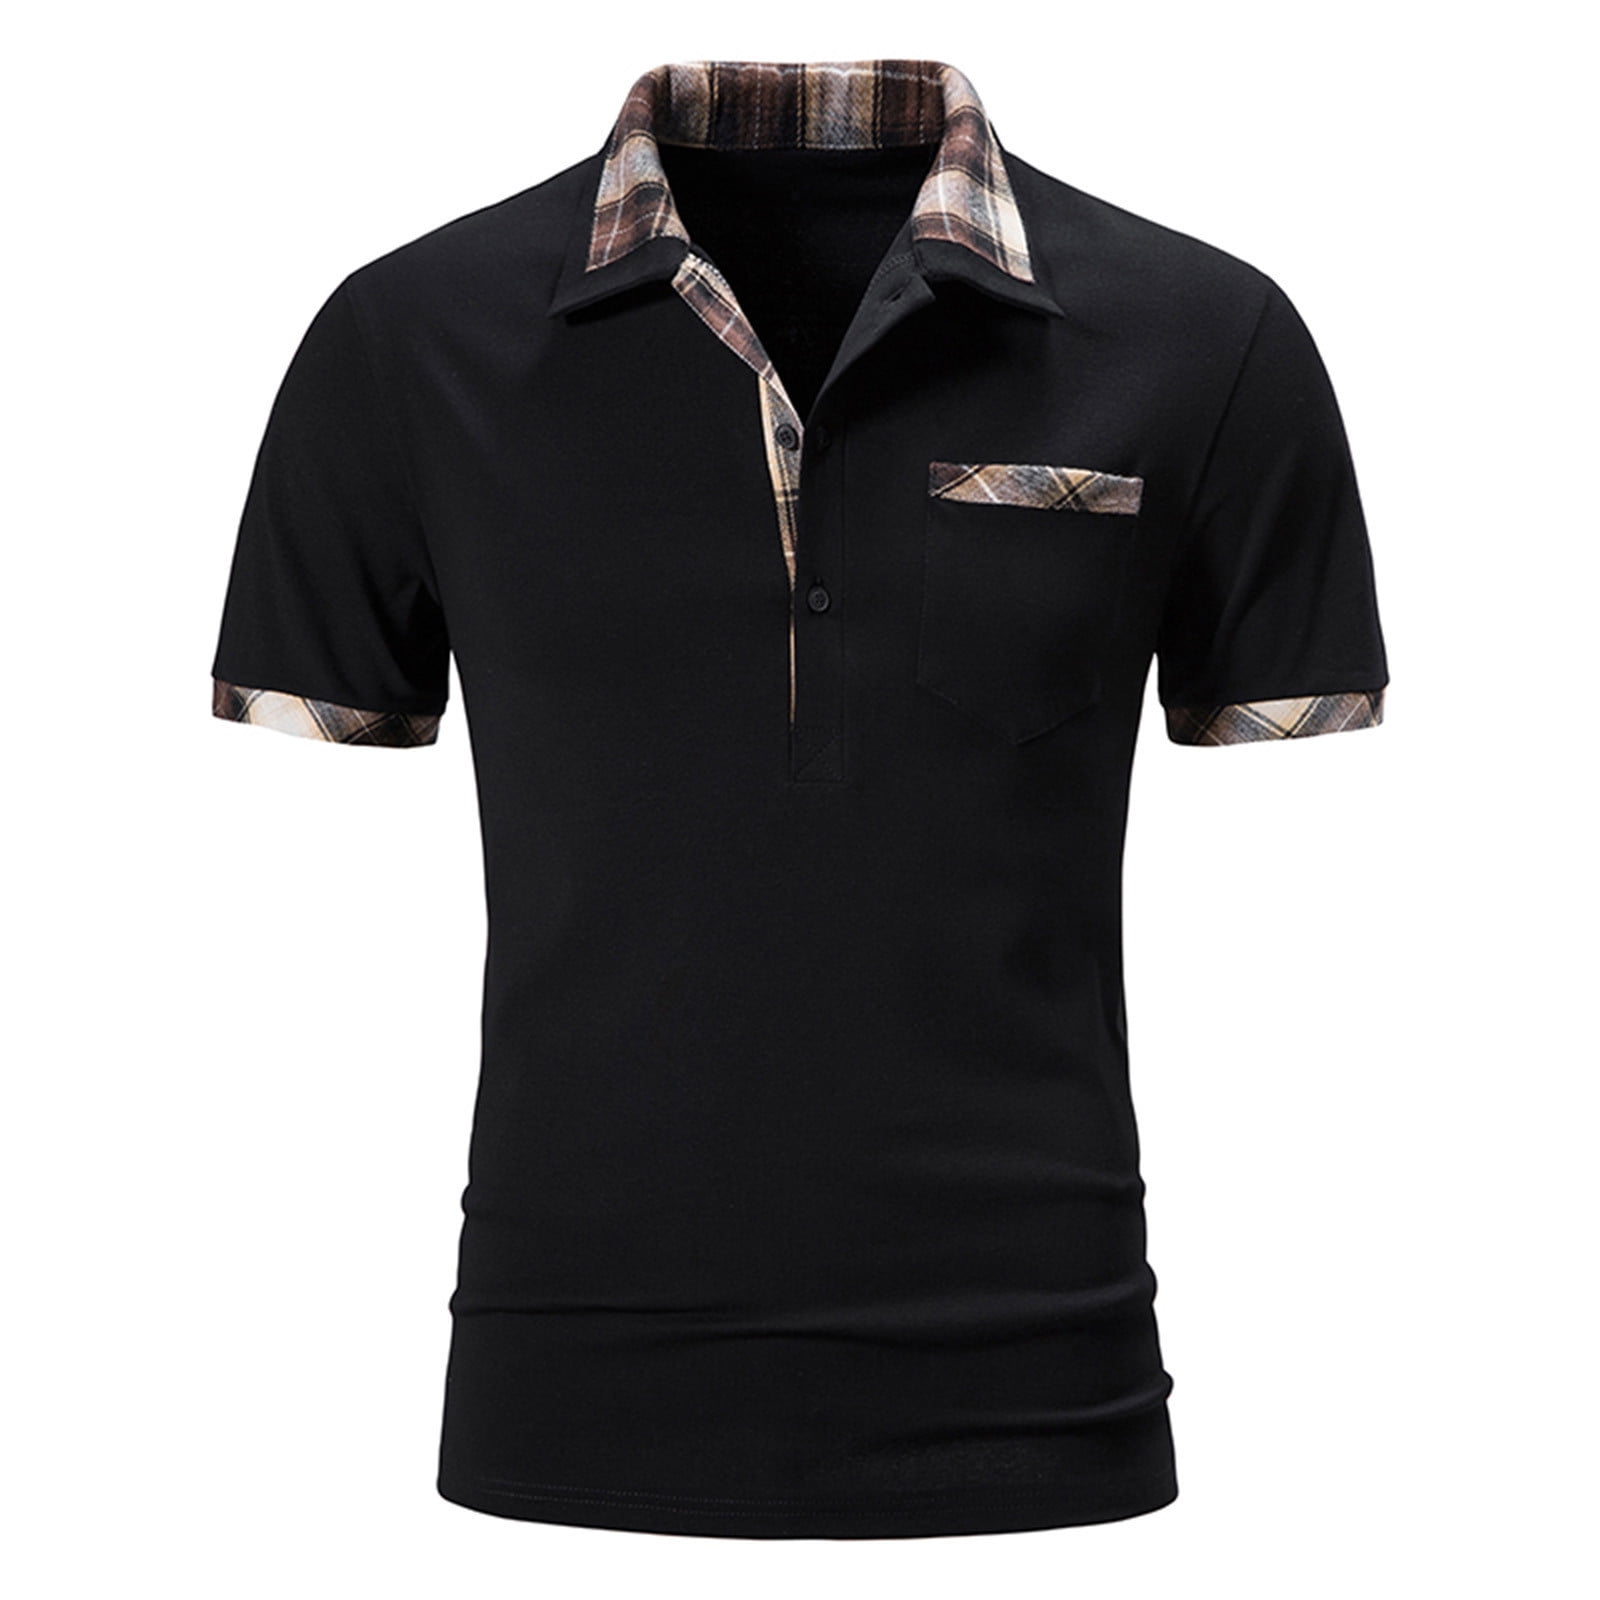 Golf Shirt for Men Regular-Fit Cotton Shirts Short Sleeve Summer Casual ...